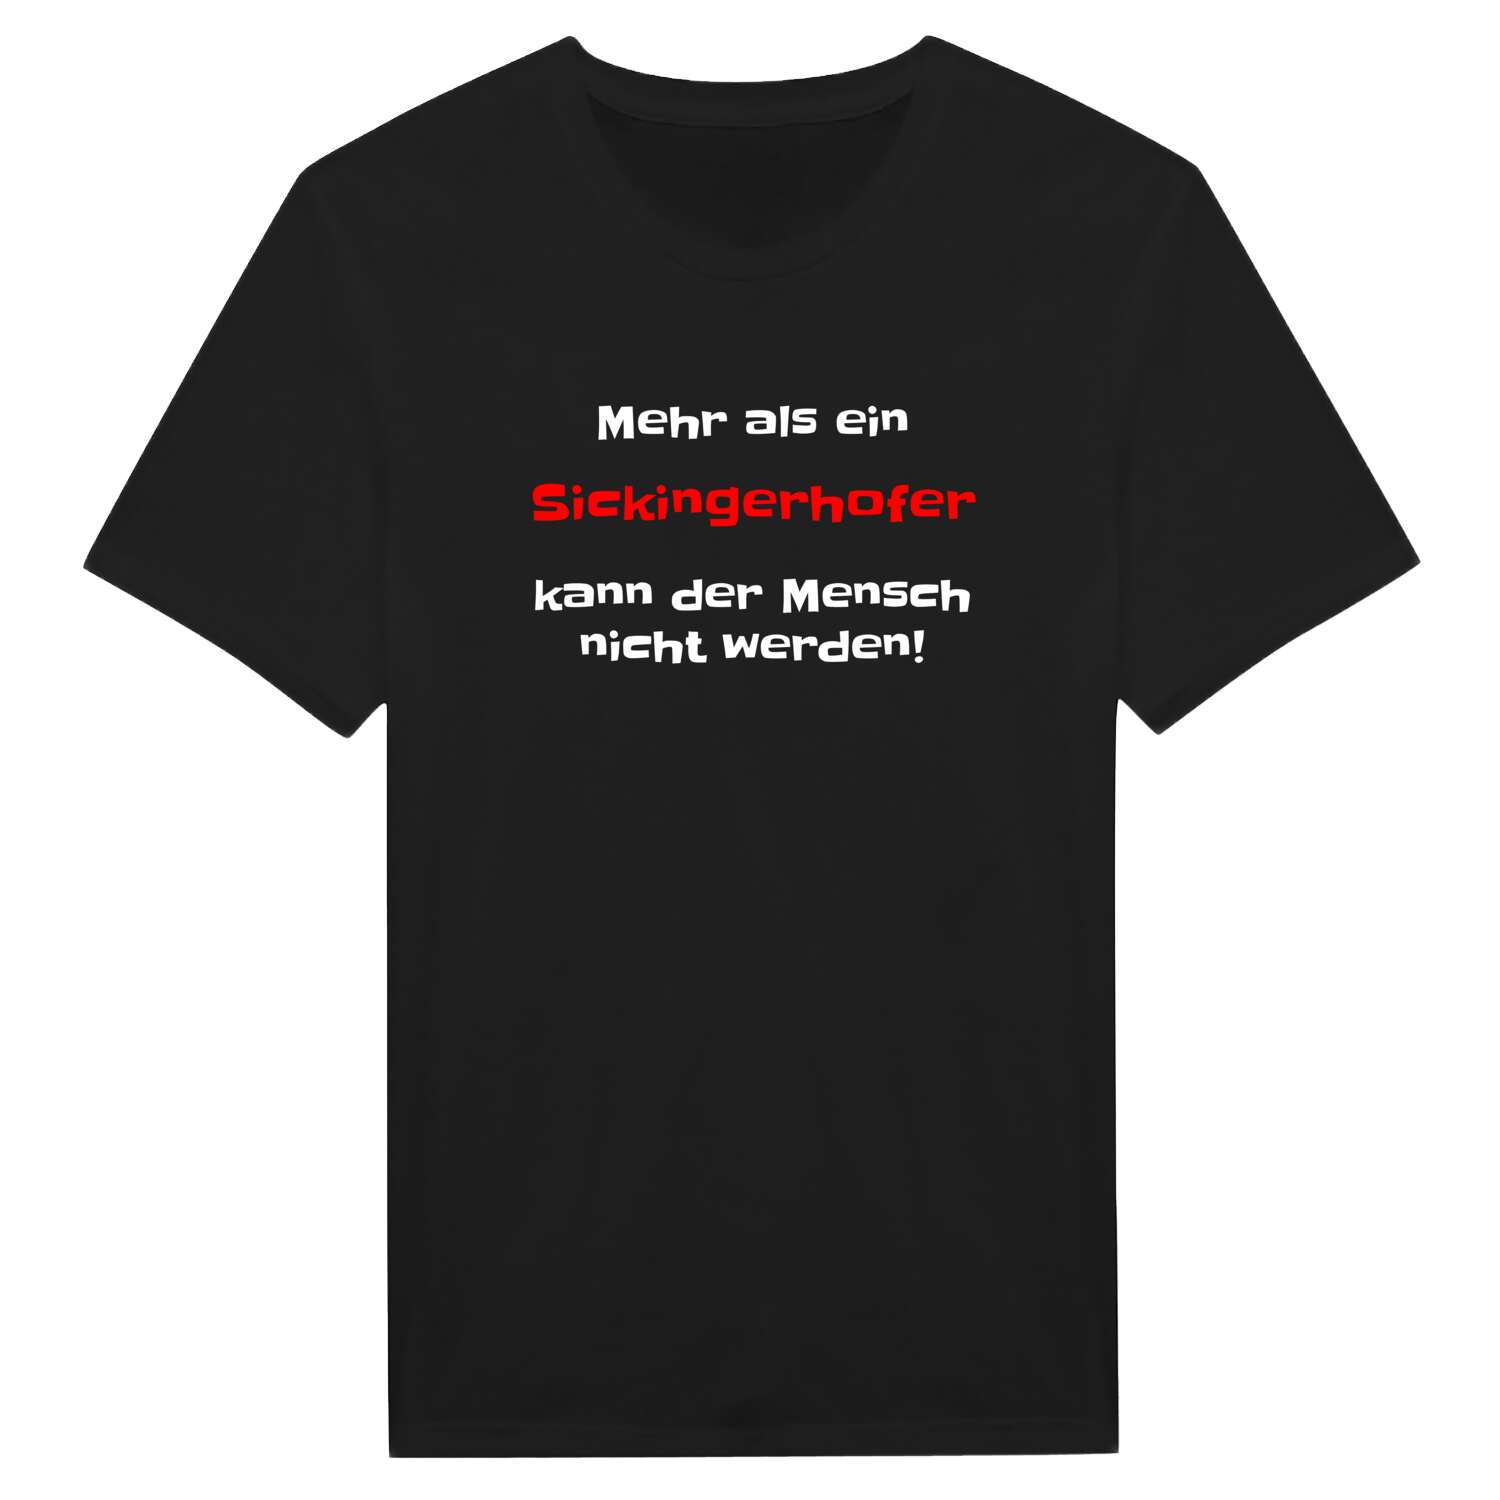 Sickingerhof T-Shirt »Mehr als ein«